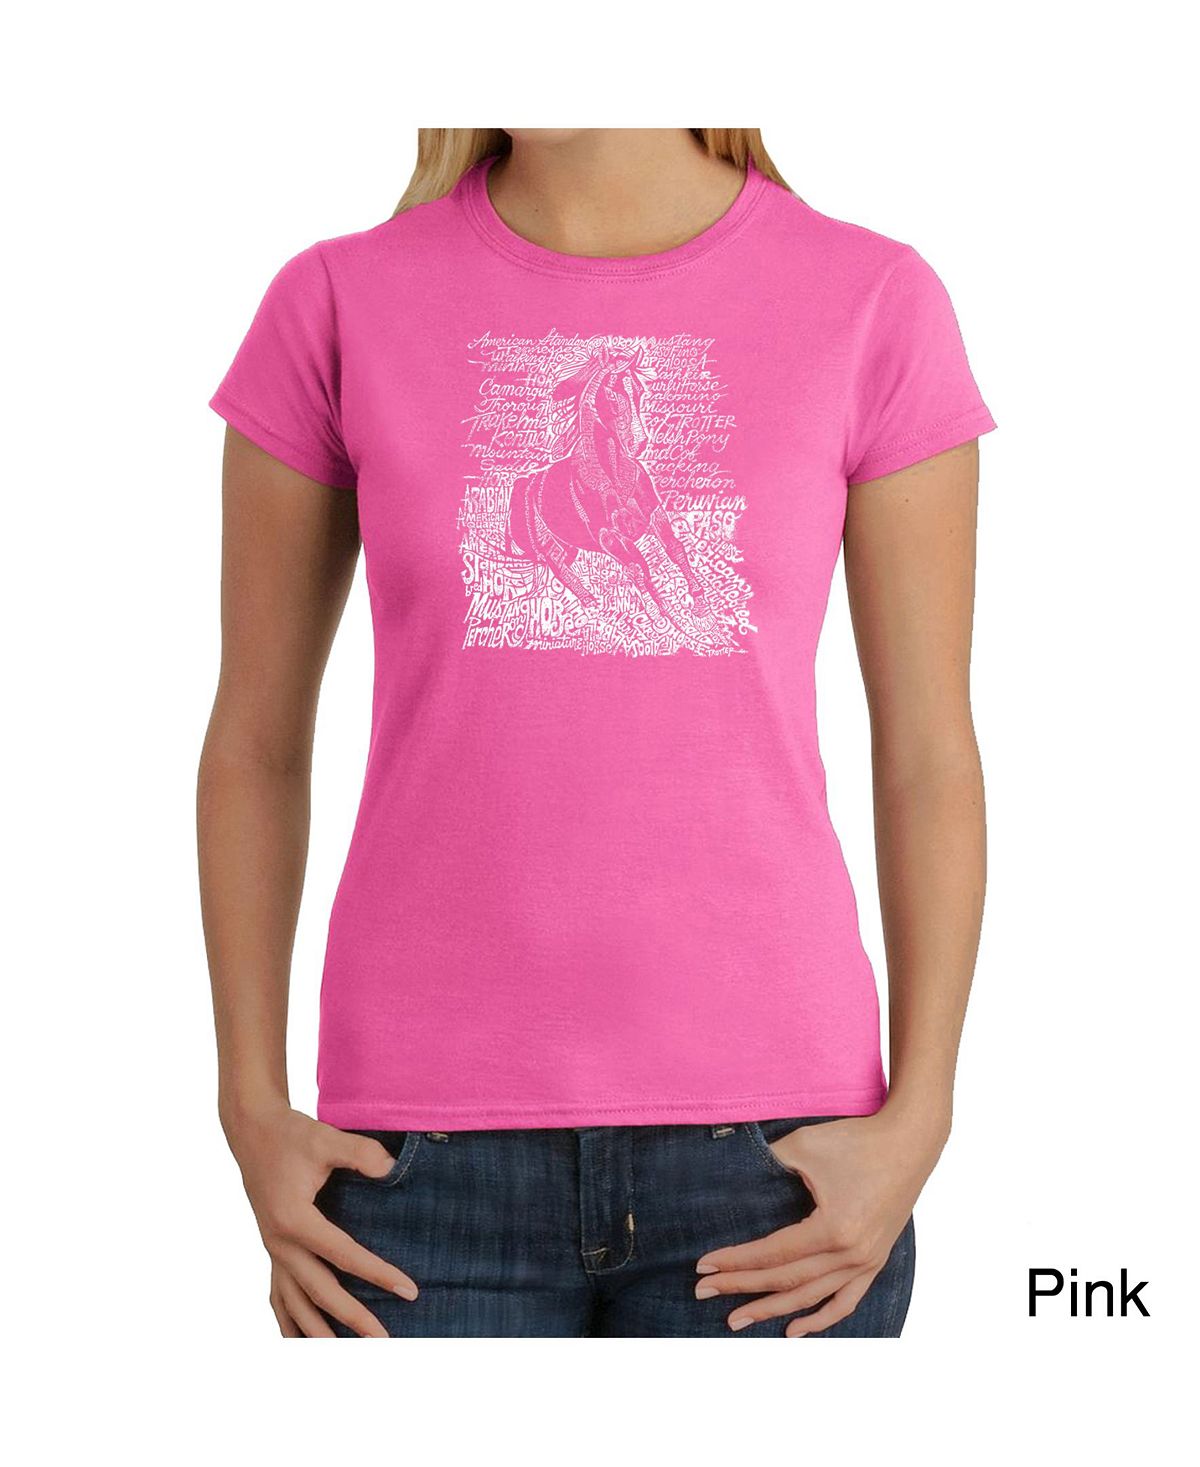 Женская футболка word art - популярные породы лошадей LA Pop Art, розовый